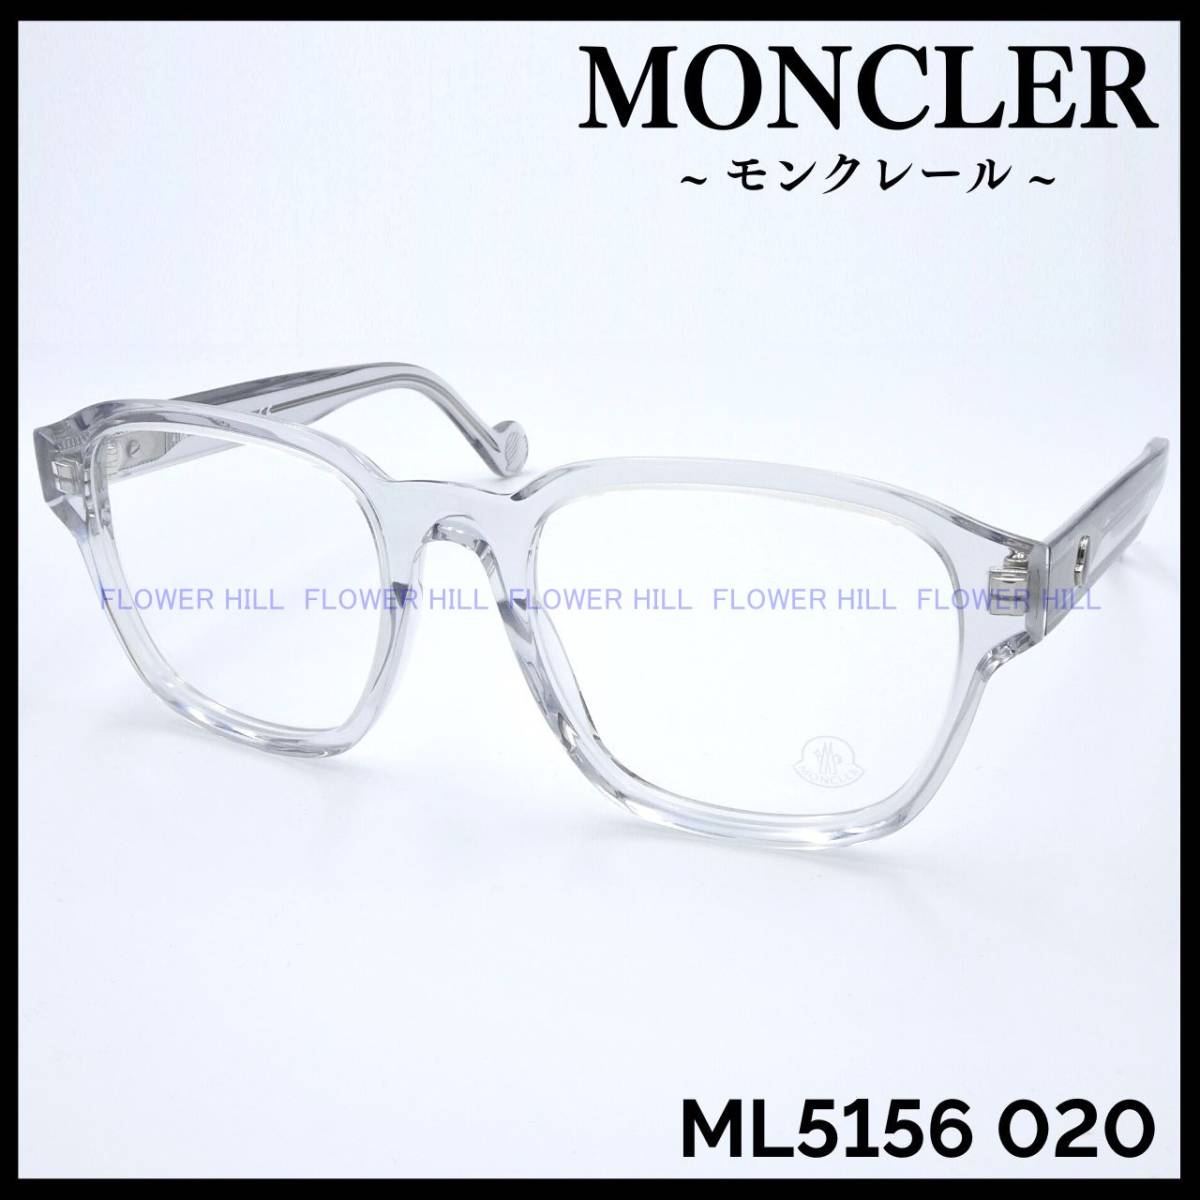 【新品・送料無料】モンクレール MONCLER ML5156 020 メガネ フレーム クリアグレー イタリア製 メンズ レディース ウェリントン